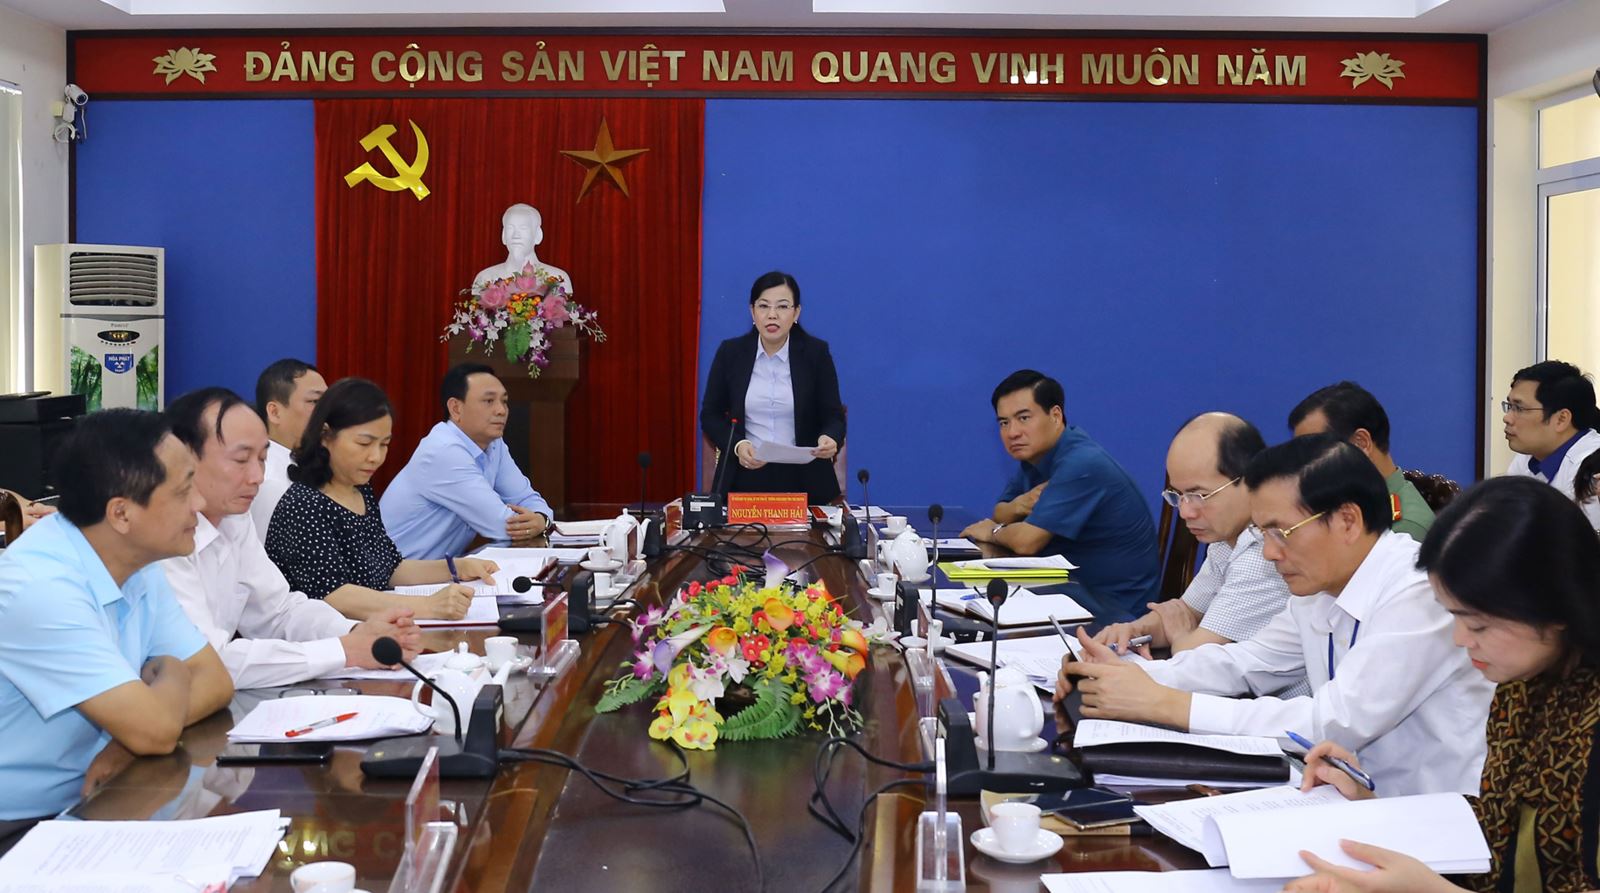 Đồng chí Bí thư Tỉnh ủy Nguyễn Thanh Hải phát biểu chỉ đạo trong một buổi tiếp công dân.